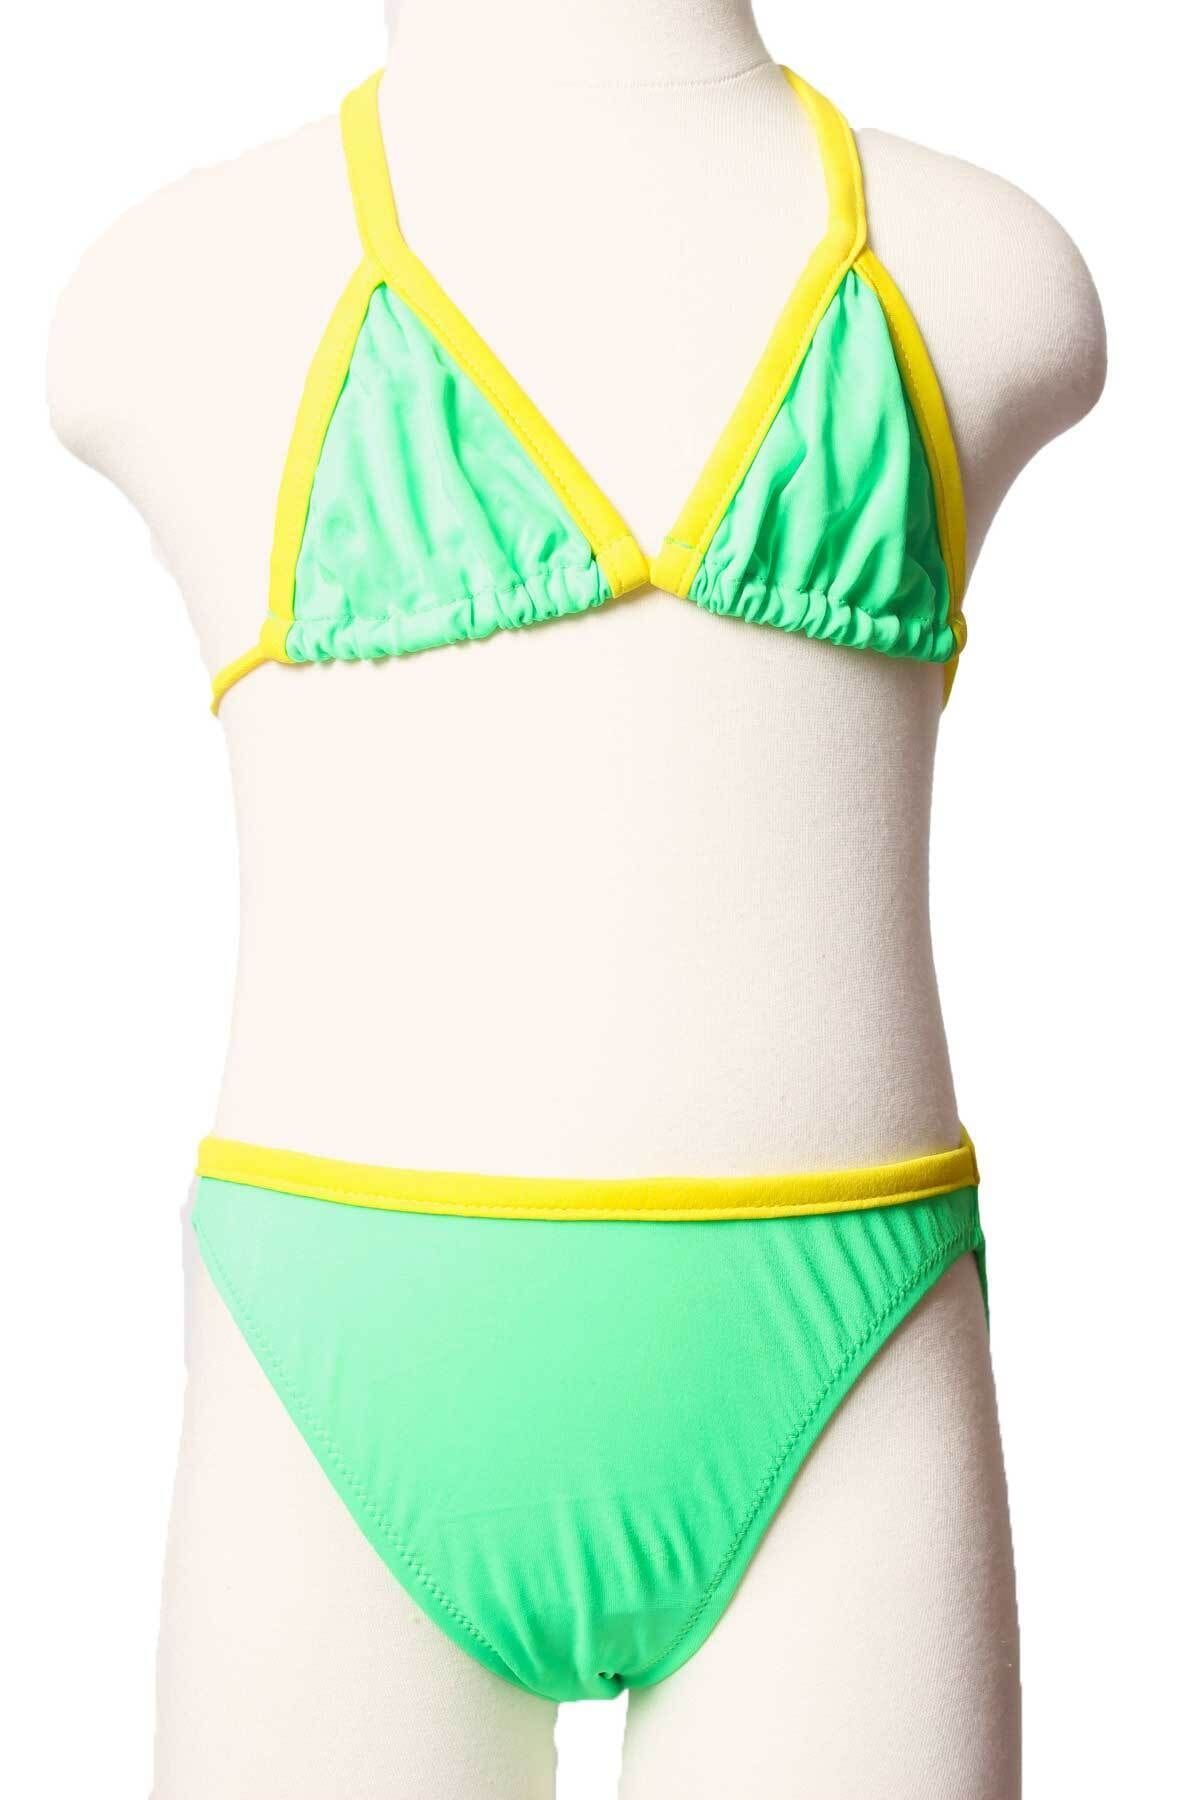 Sude Ayl Kız Çocuk Yeşil Boyudan Bağlamalı Üçgen Model Alt Üst Düz Bikini Takım 245